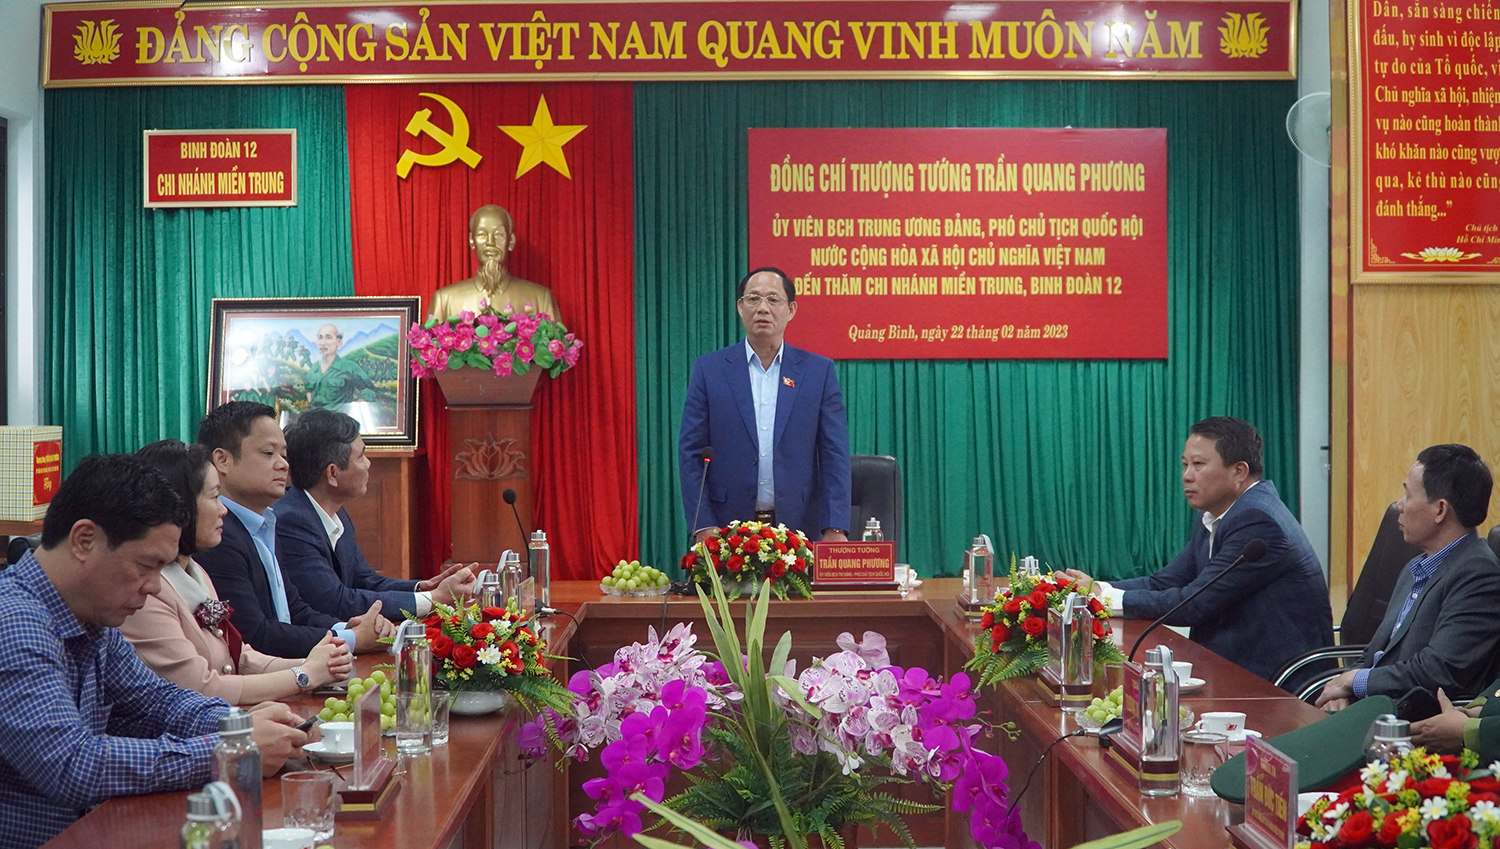 Đồng chí Thượng tướng, Phó Chủ tịch Quốc hội Trần Quang Phương: Quảng Bình đã chuẩn bị hoạt động kỷ niệm 100 ngày sinh Trung tướng Đồng Sỹ Nguyên rất chu đáo, trang trọng và tình nghĩa